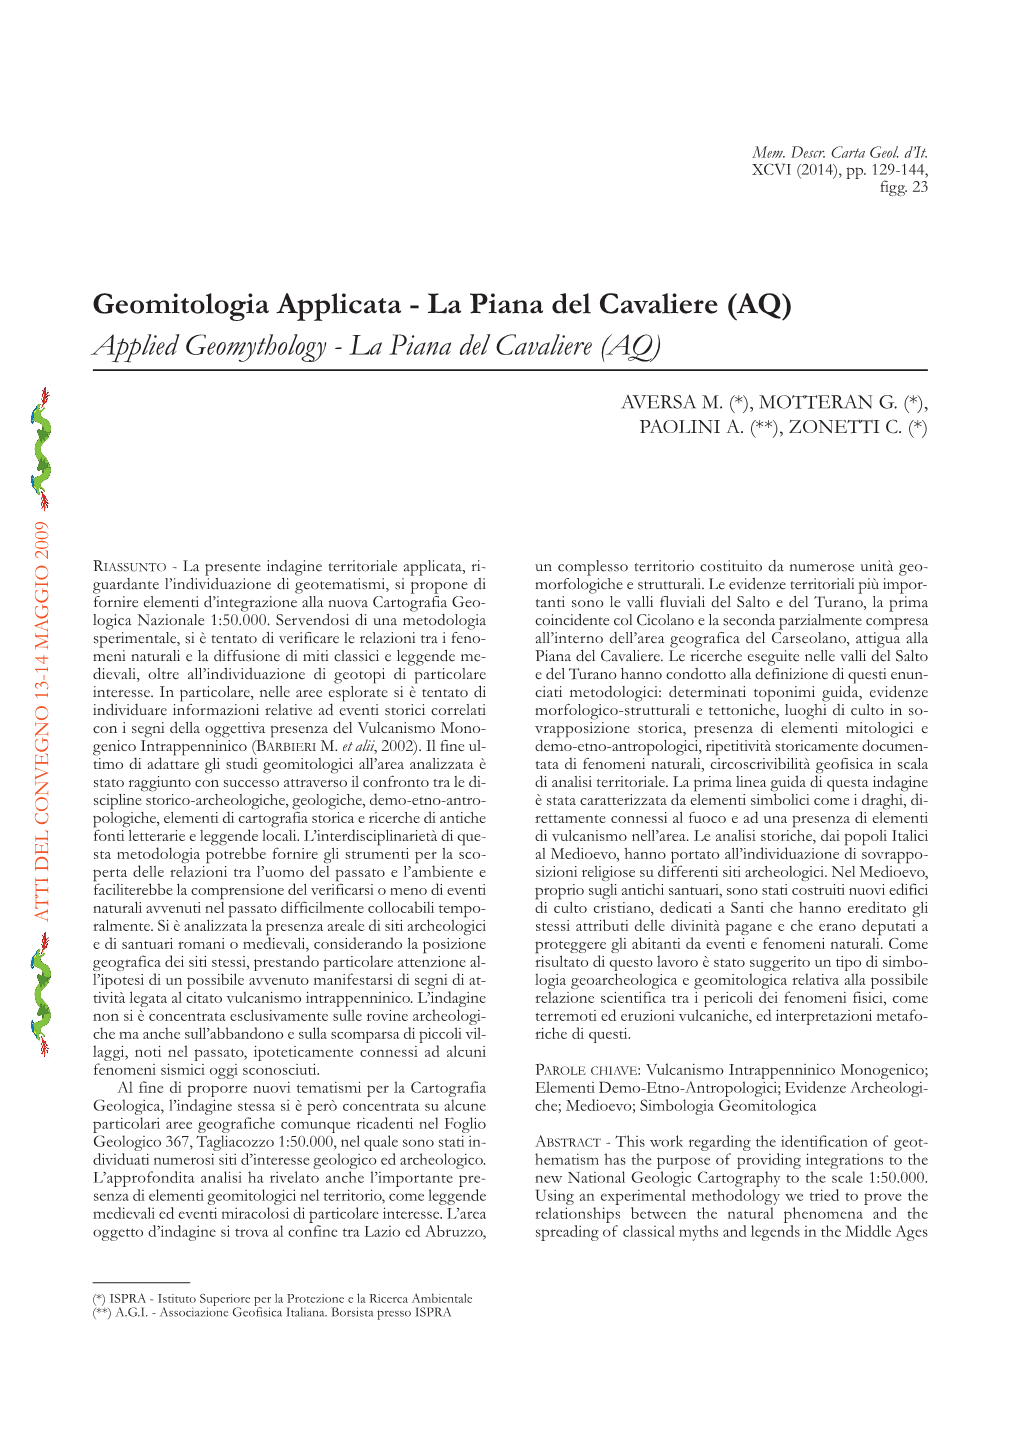 Geomitologia Applicata - La Piana Del Cavaliere (AQ) Applied Geomythology - La Piana Del Cavaliere (AQ)